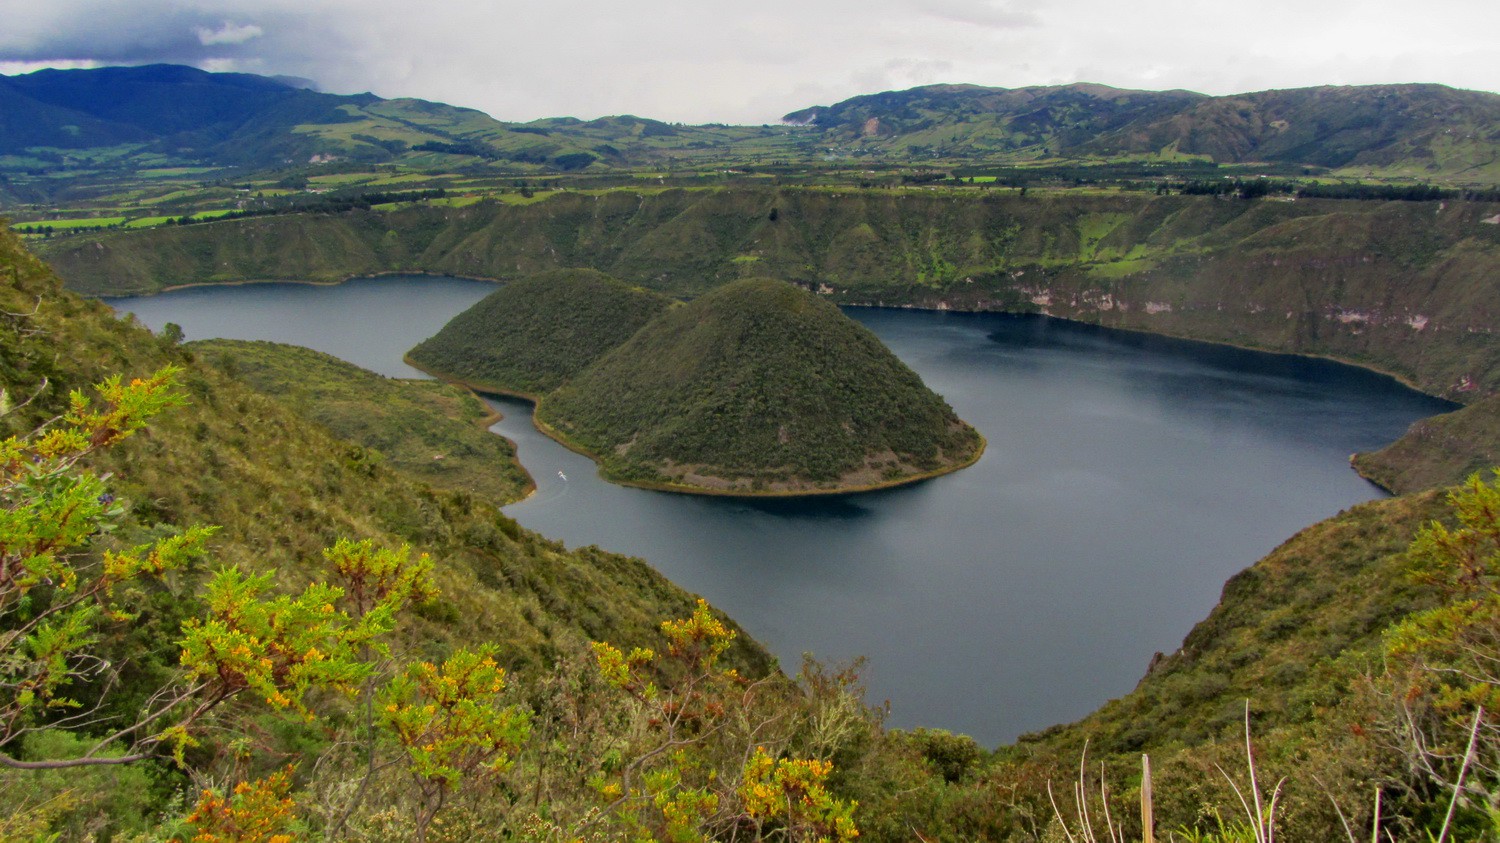 Laguna de Cuicocha is a crater lake